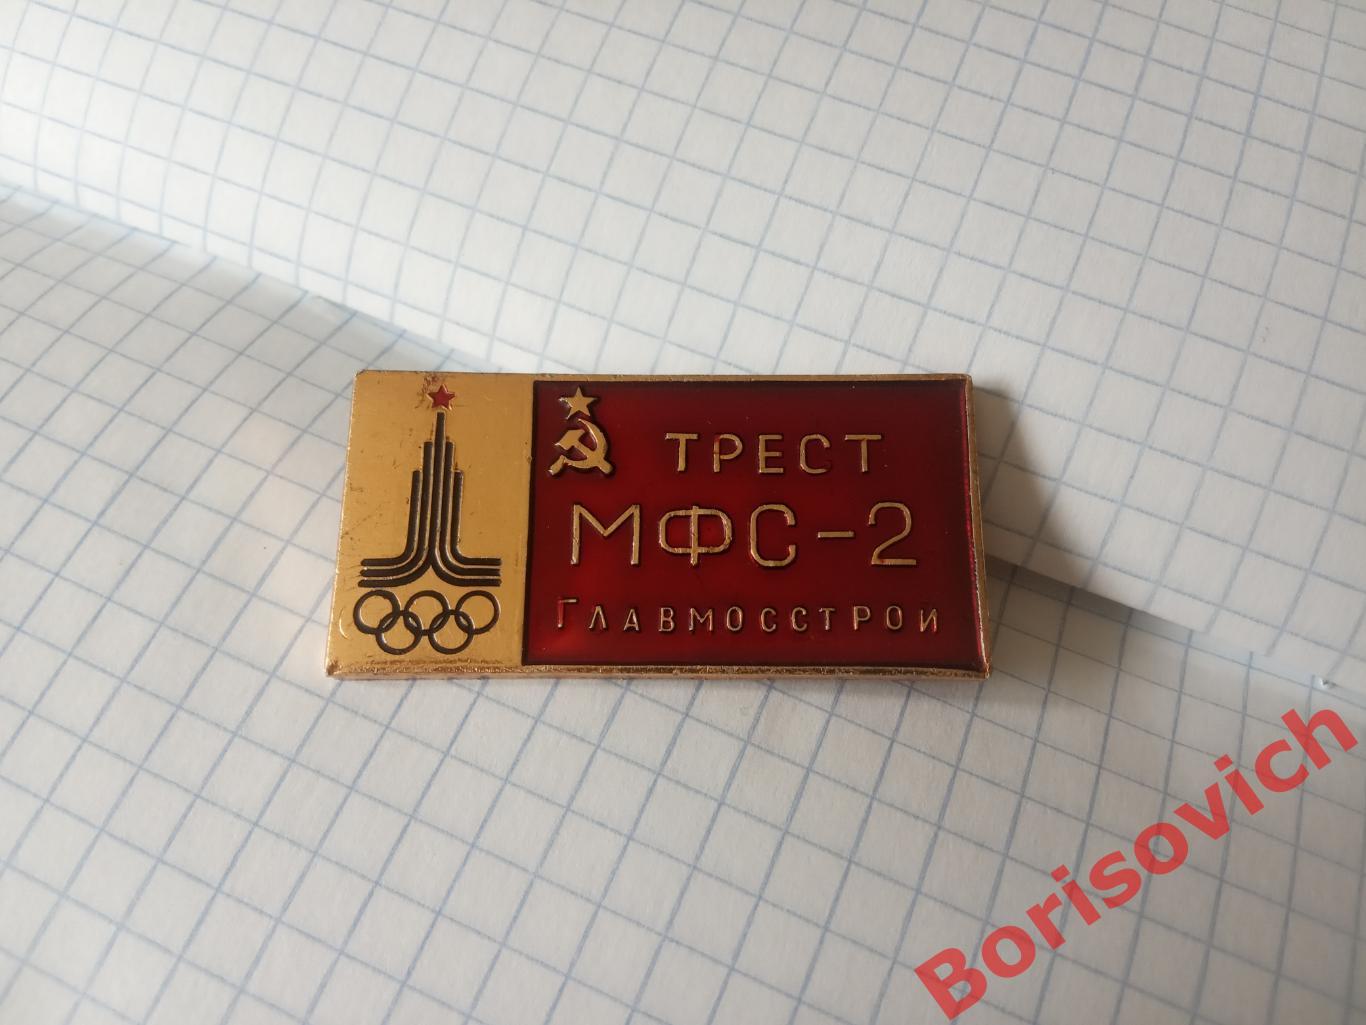 Трест МФС - 2 Главмосстрой Олимпиада 1980 г 1